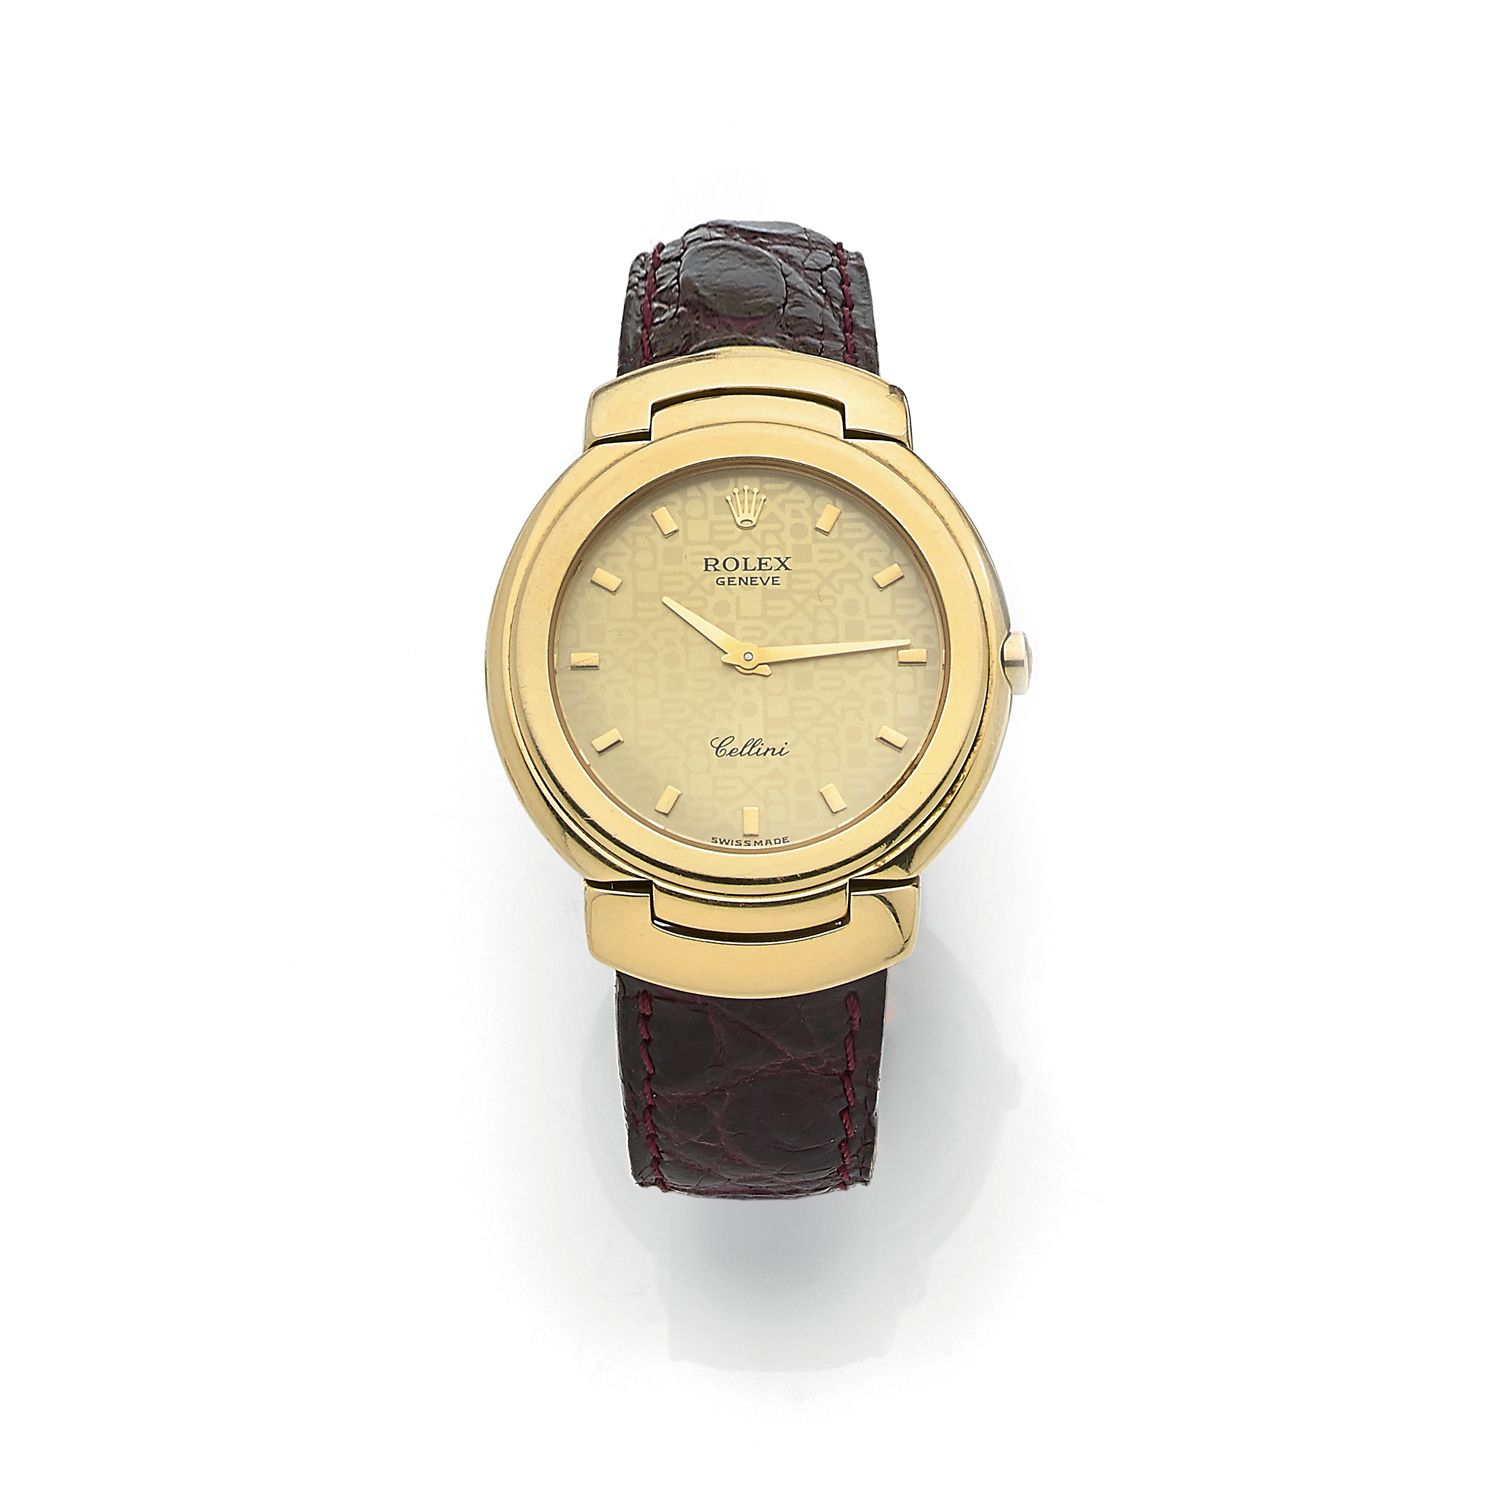 Null ROLEX

2000er Jahre

Modell Cellini

Armbanduhr in runder Form aus 18k Gelb&hellip;